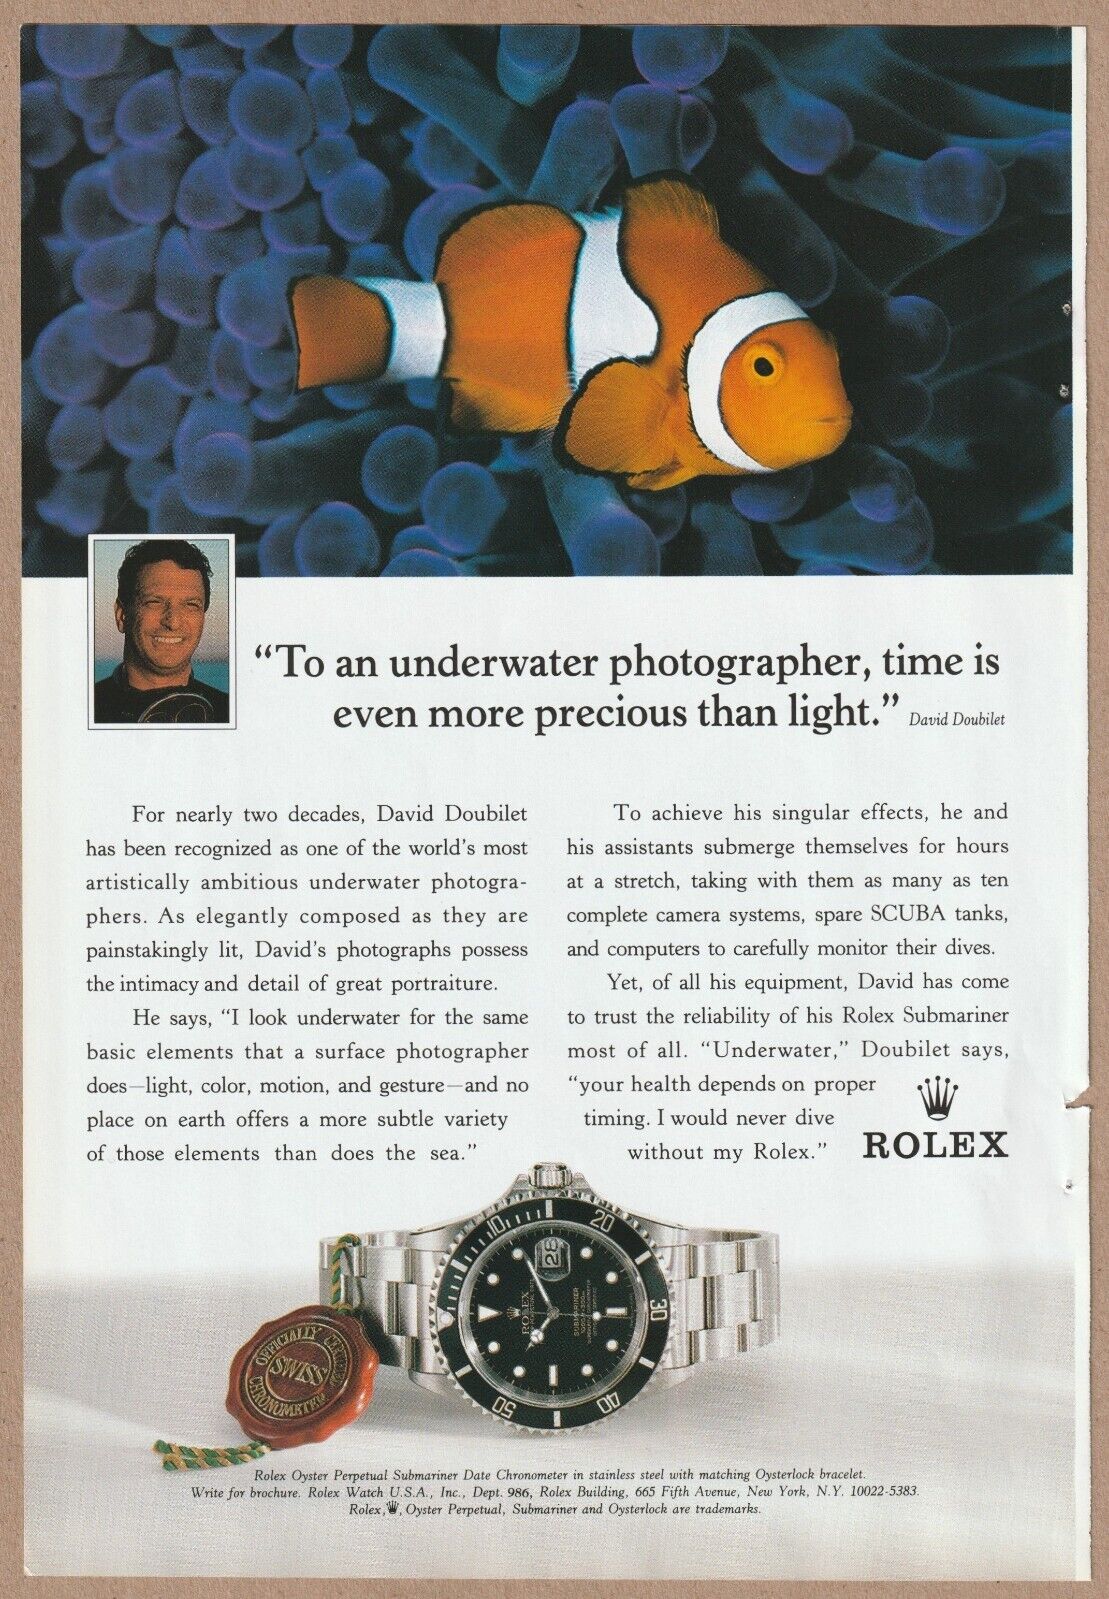 1996 Rolex Submariner Watch Vintage Print Ad Underwater Photographer Clown Fish